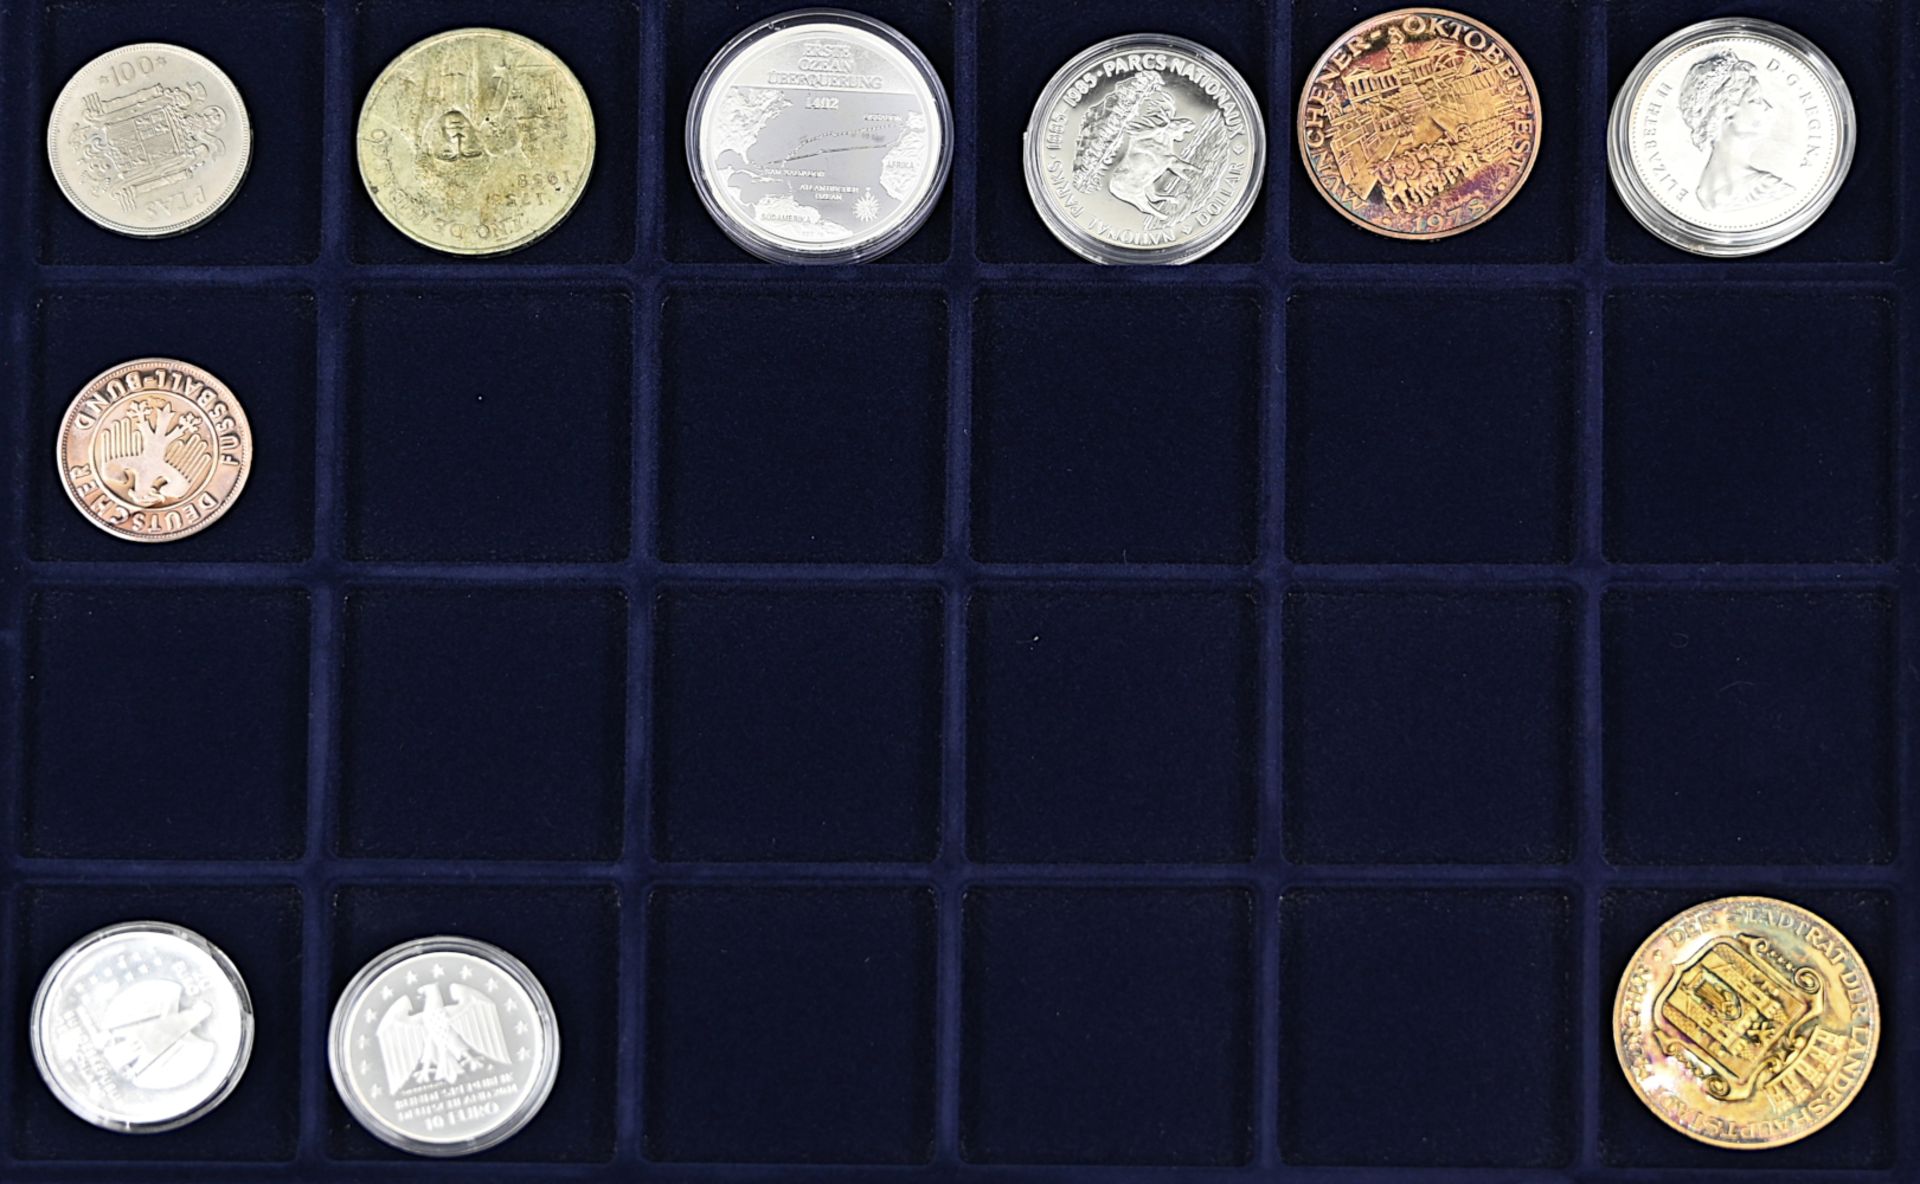 1 Konvolut Münzen/ Medaillen: Silber, Metall u.a. BRD 10€ polierte Platte, BRD 5/ 10DM, Sudan u.a., - Bild 2 aus 6